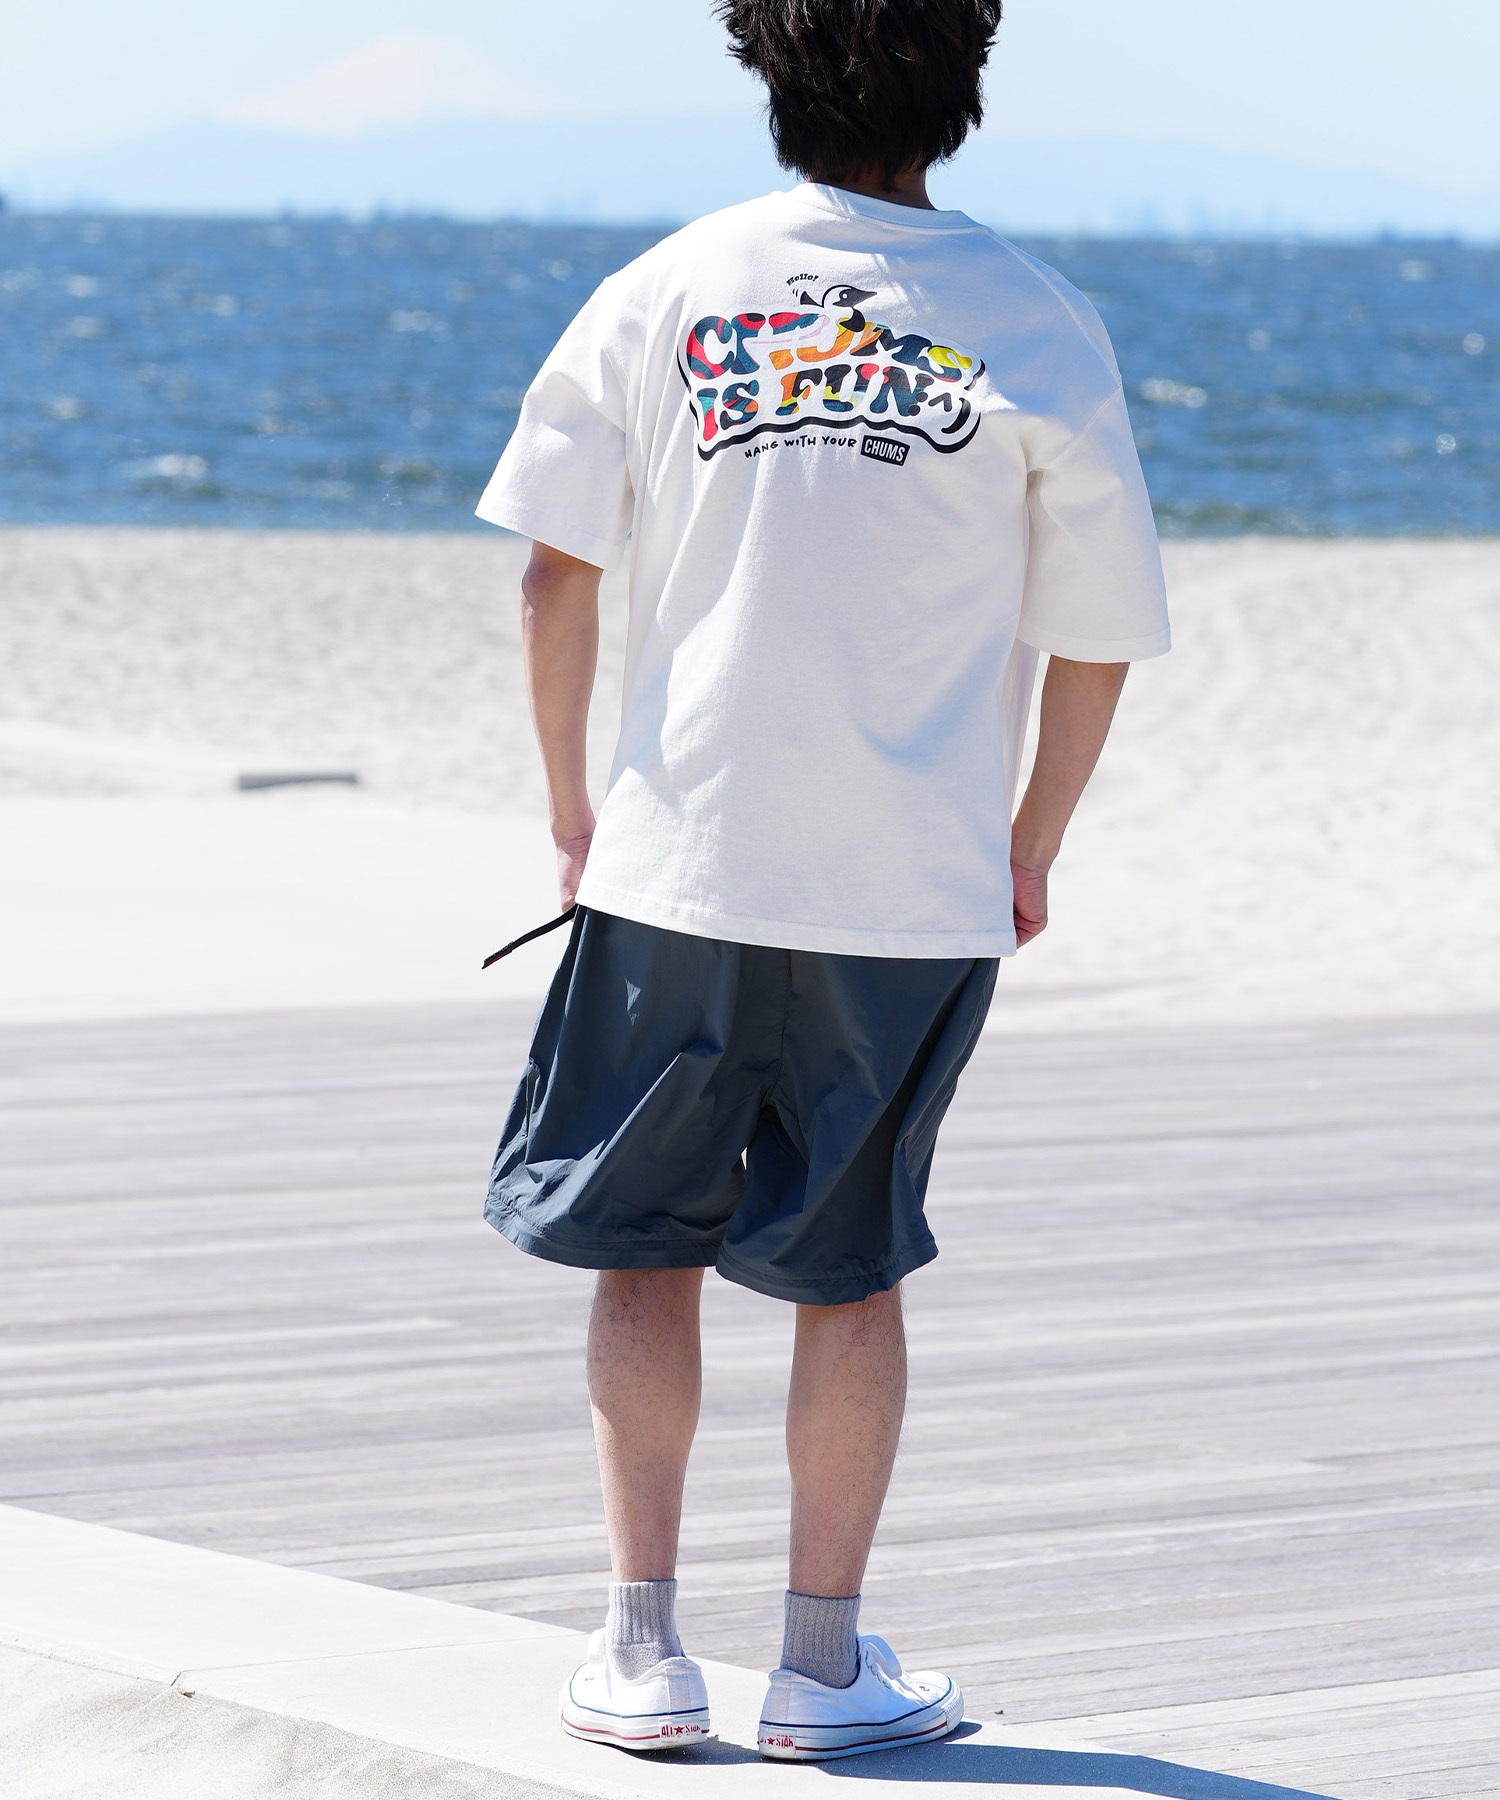 【マトメガイ対象】CHUMS チャムス メンズ Tシャツ 半袖 ロゴ ブービーバード マーブル柄 バックプリント オーバーサイズ CH01-2357(K001-M)